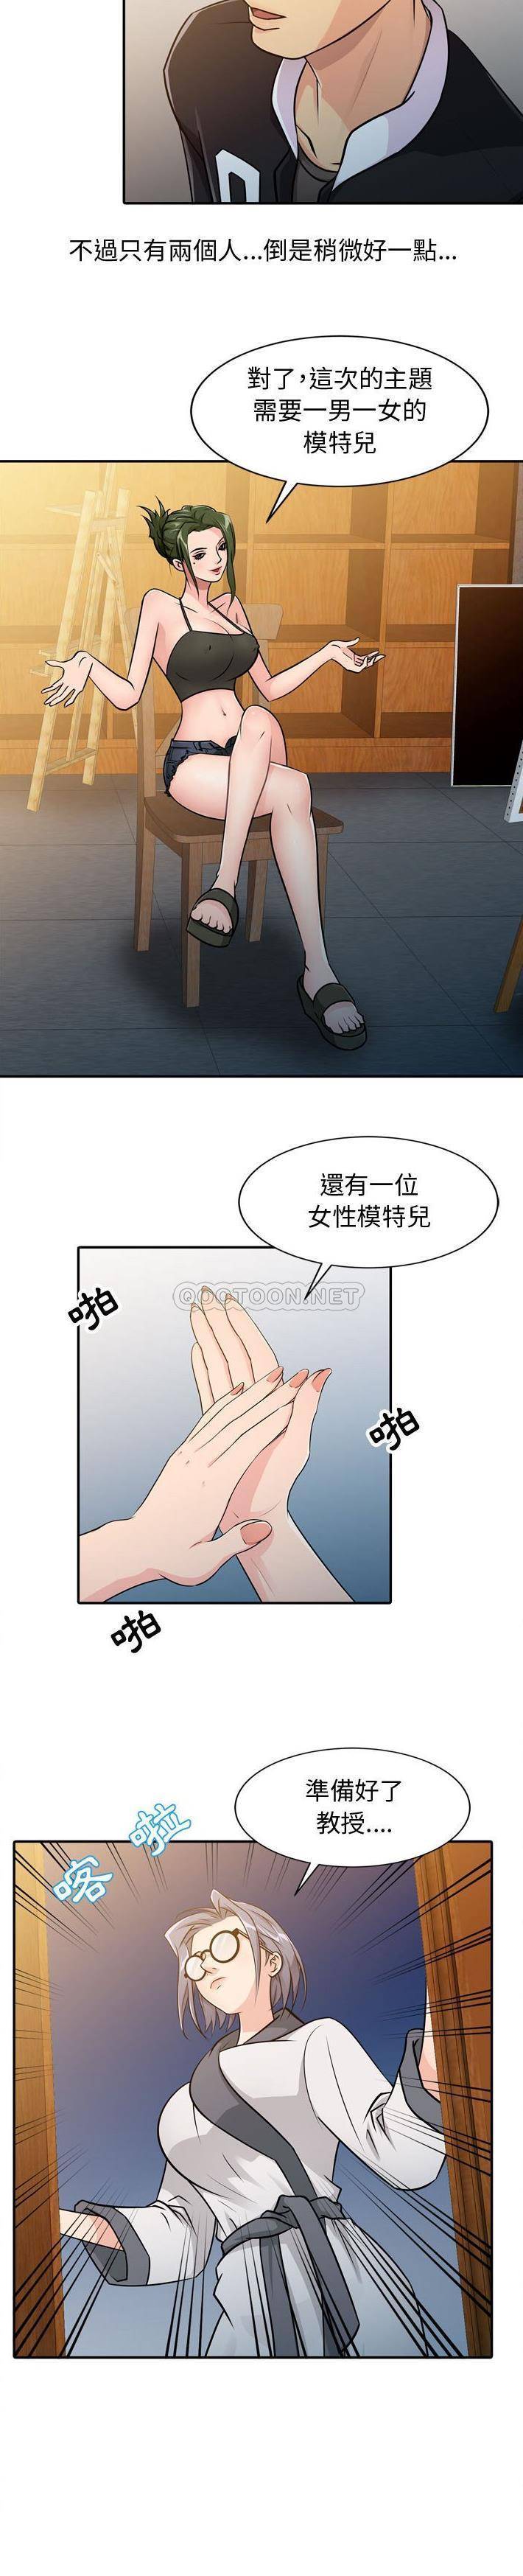 韩国污漫画 征服的滋味 第4话 8